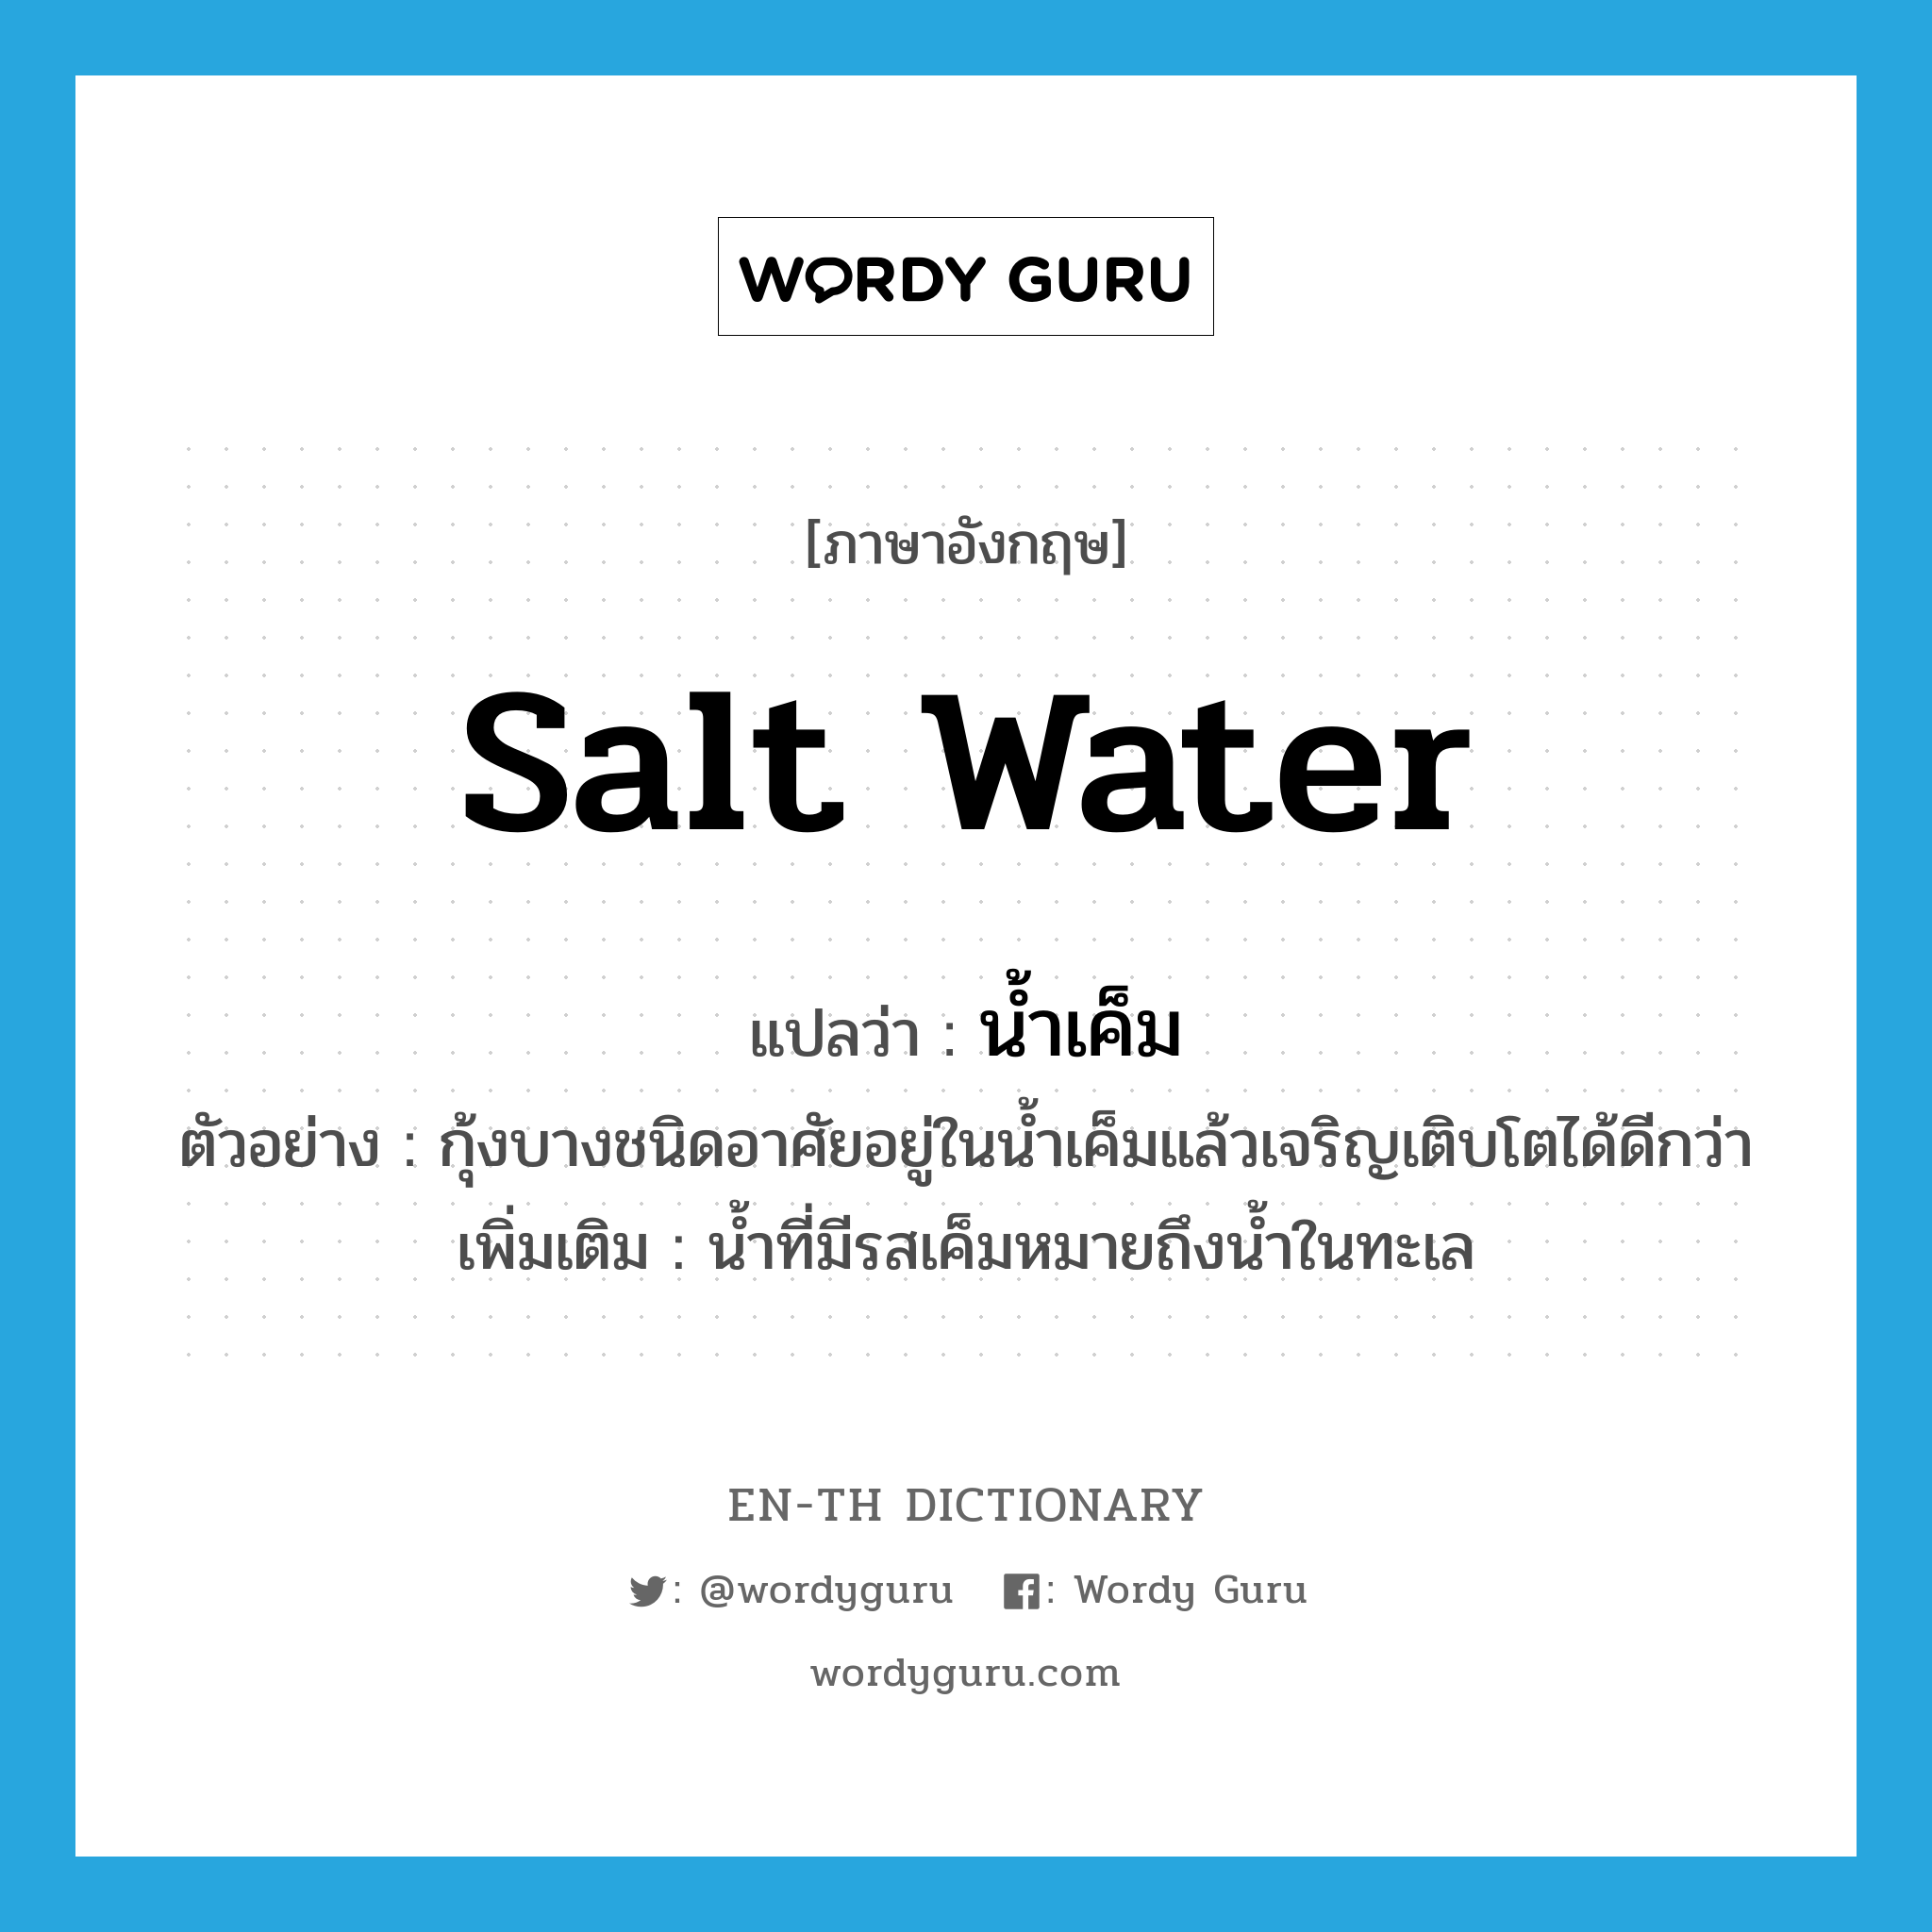 น้ำเค็ม ภาษาอังกฤษ?, คำศัพท์ภาษาอังกฤษ น้ำเค็ม แปลว่า salt water ประเภท N ตัวอย่าง กุ้งบางชนิดอาศัยอยู่ในน้ำเค็มแล้วเจริญเติบโตได้ดีกว่า เพิ่มเติม น้ำที่มีรสเค็มหมายถึงน้ำในทะเล หมวด N